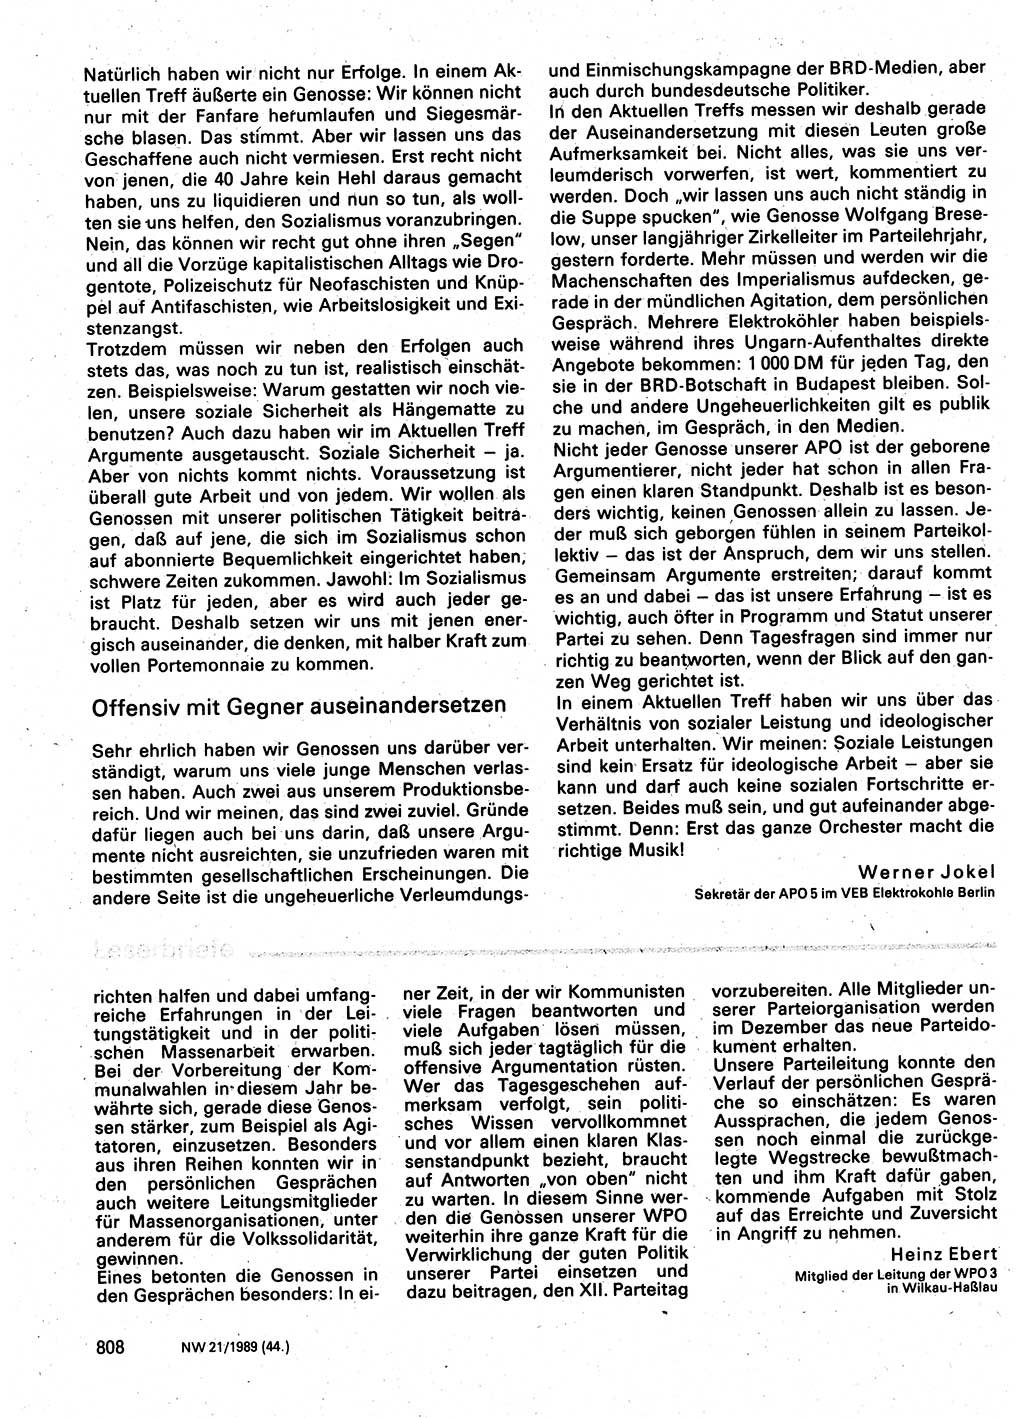 Neuer Weg (NW), Organ des Zentralkomitees (ZK) der SED (Sozialistische Einheitspartei Deutschlands) für Fragen des Parteilebens, 44. Jahrgang [Deutsche Demokratische Republik (DDR)] 1989, Seite 808 (NW ZK SED DDR 1989, S. 808)